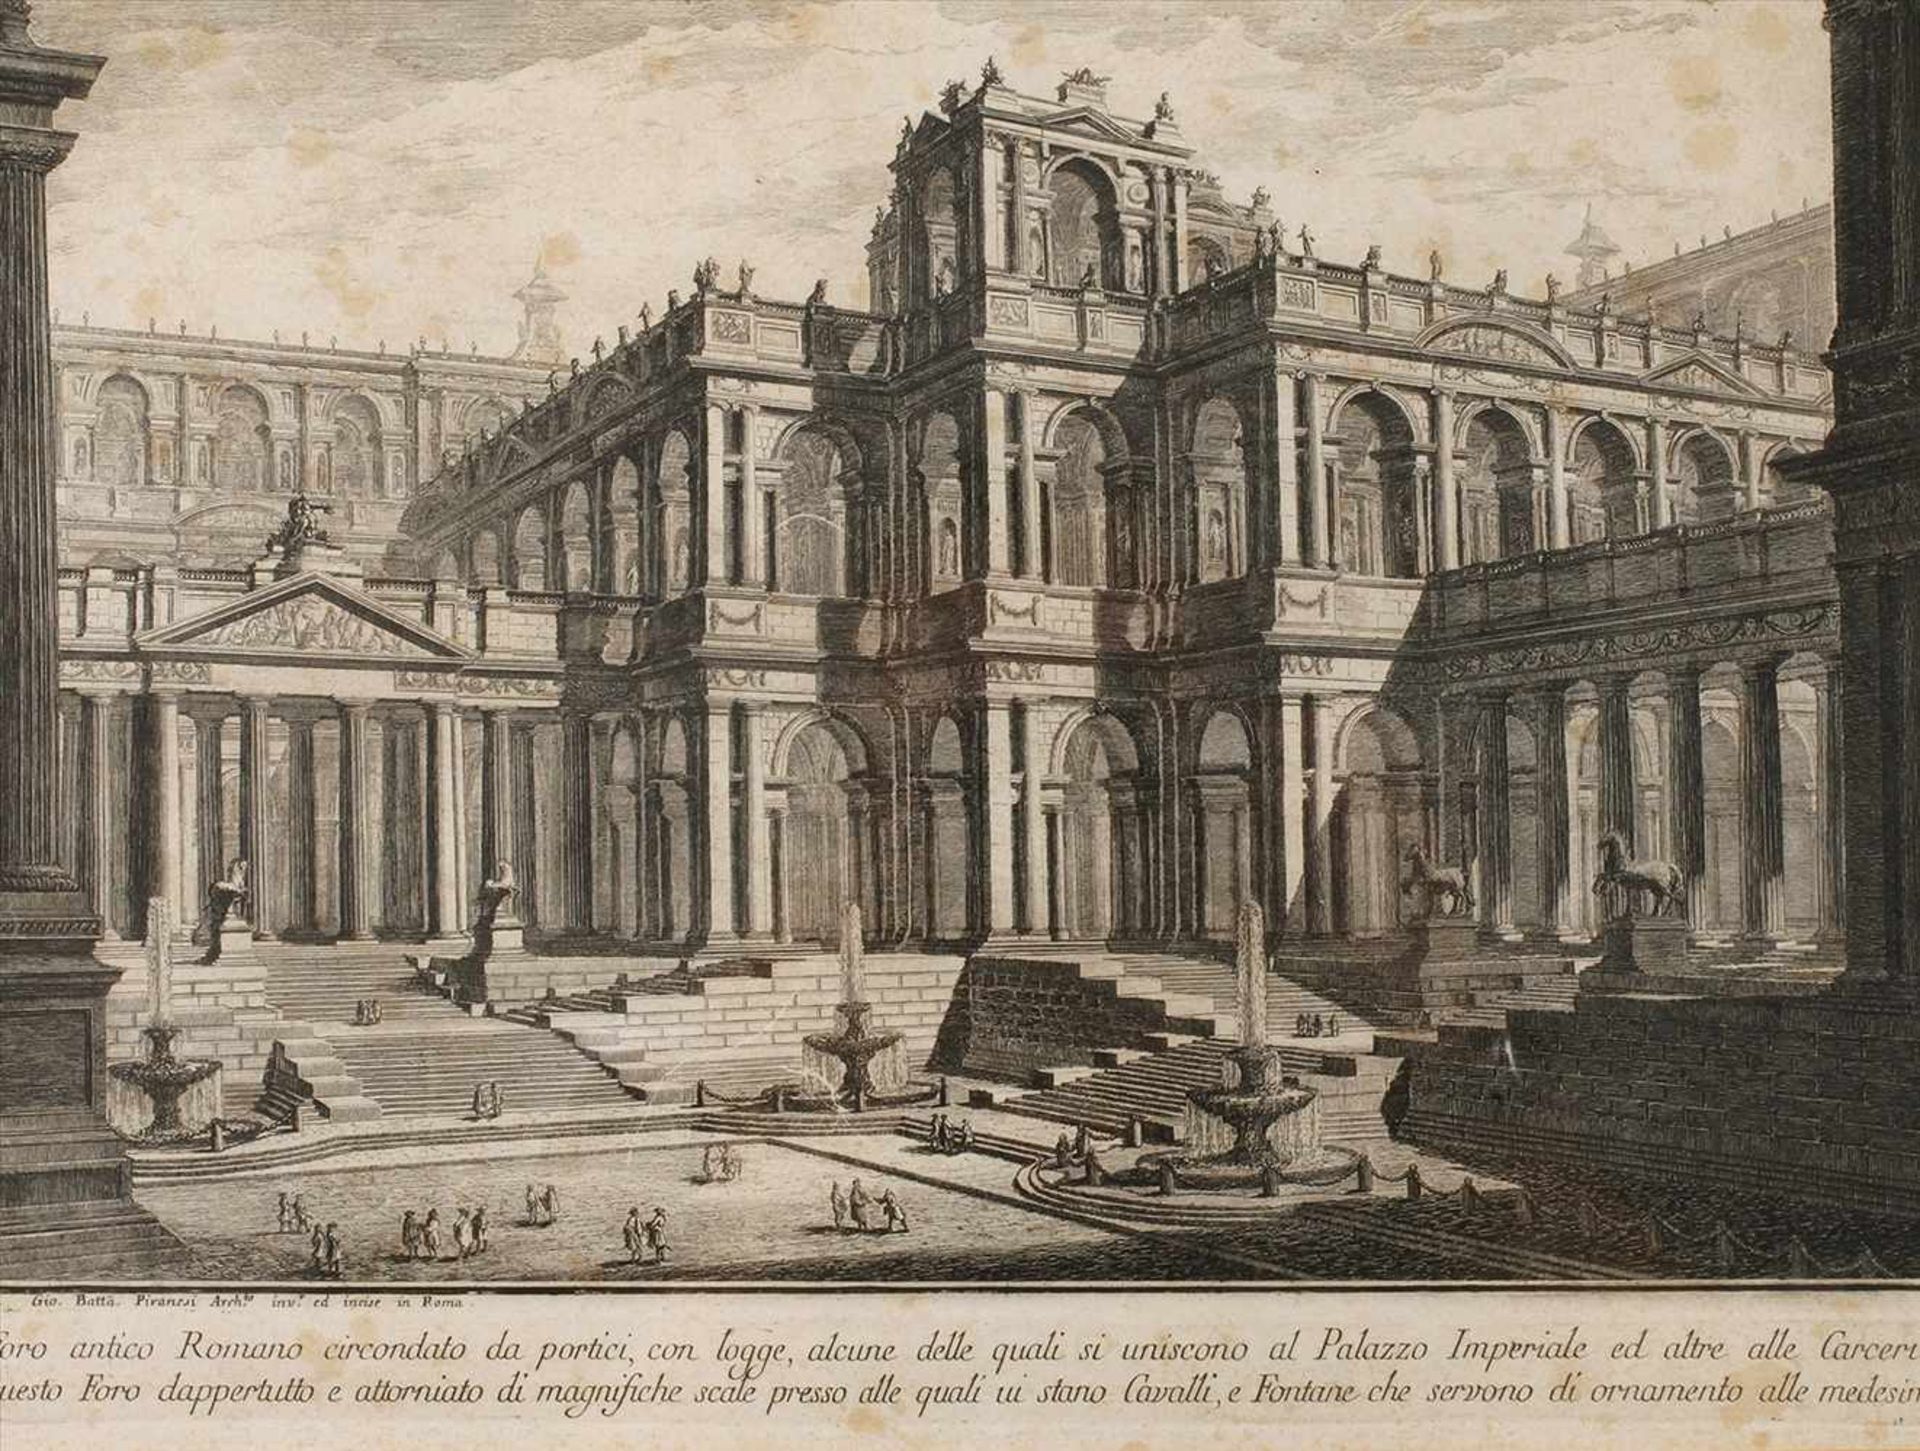 Giovanni Battista Piranesi, "Foro antico Romano"Blick auf einen prachtvollen, palastähnlichen Bau